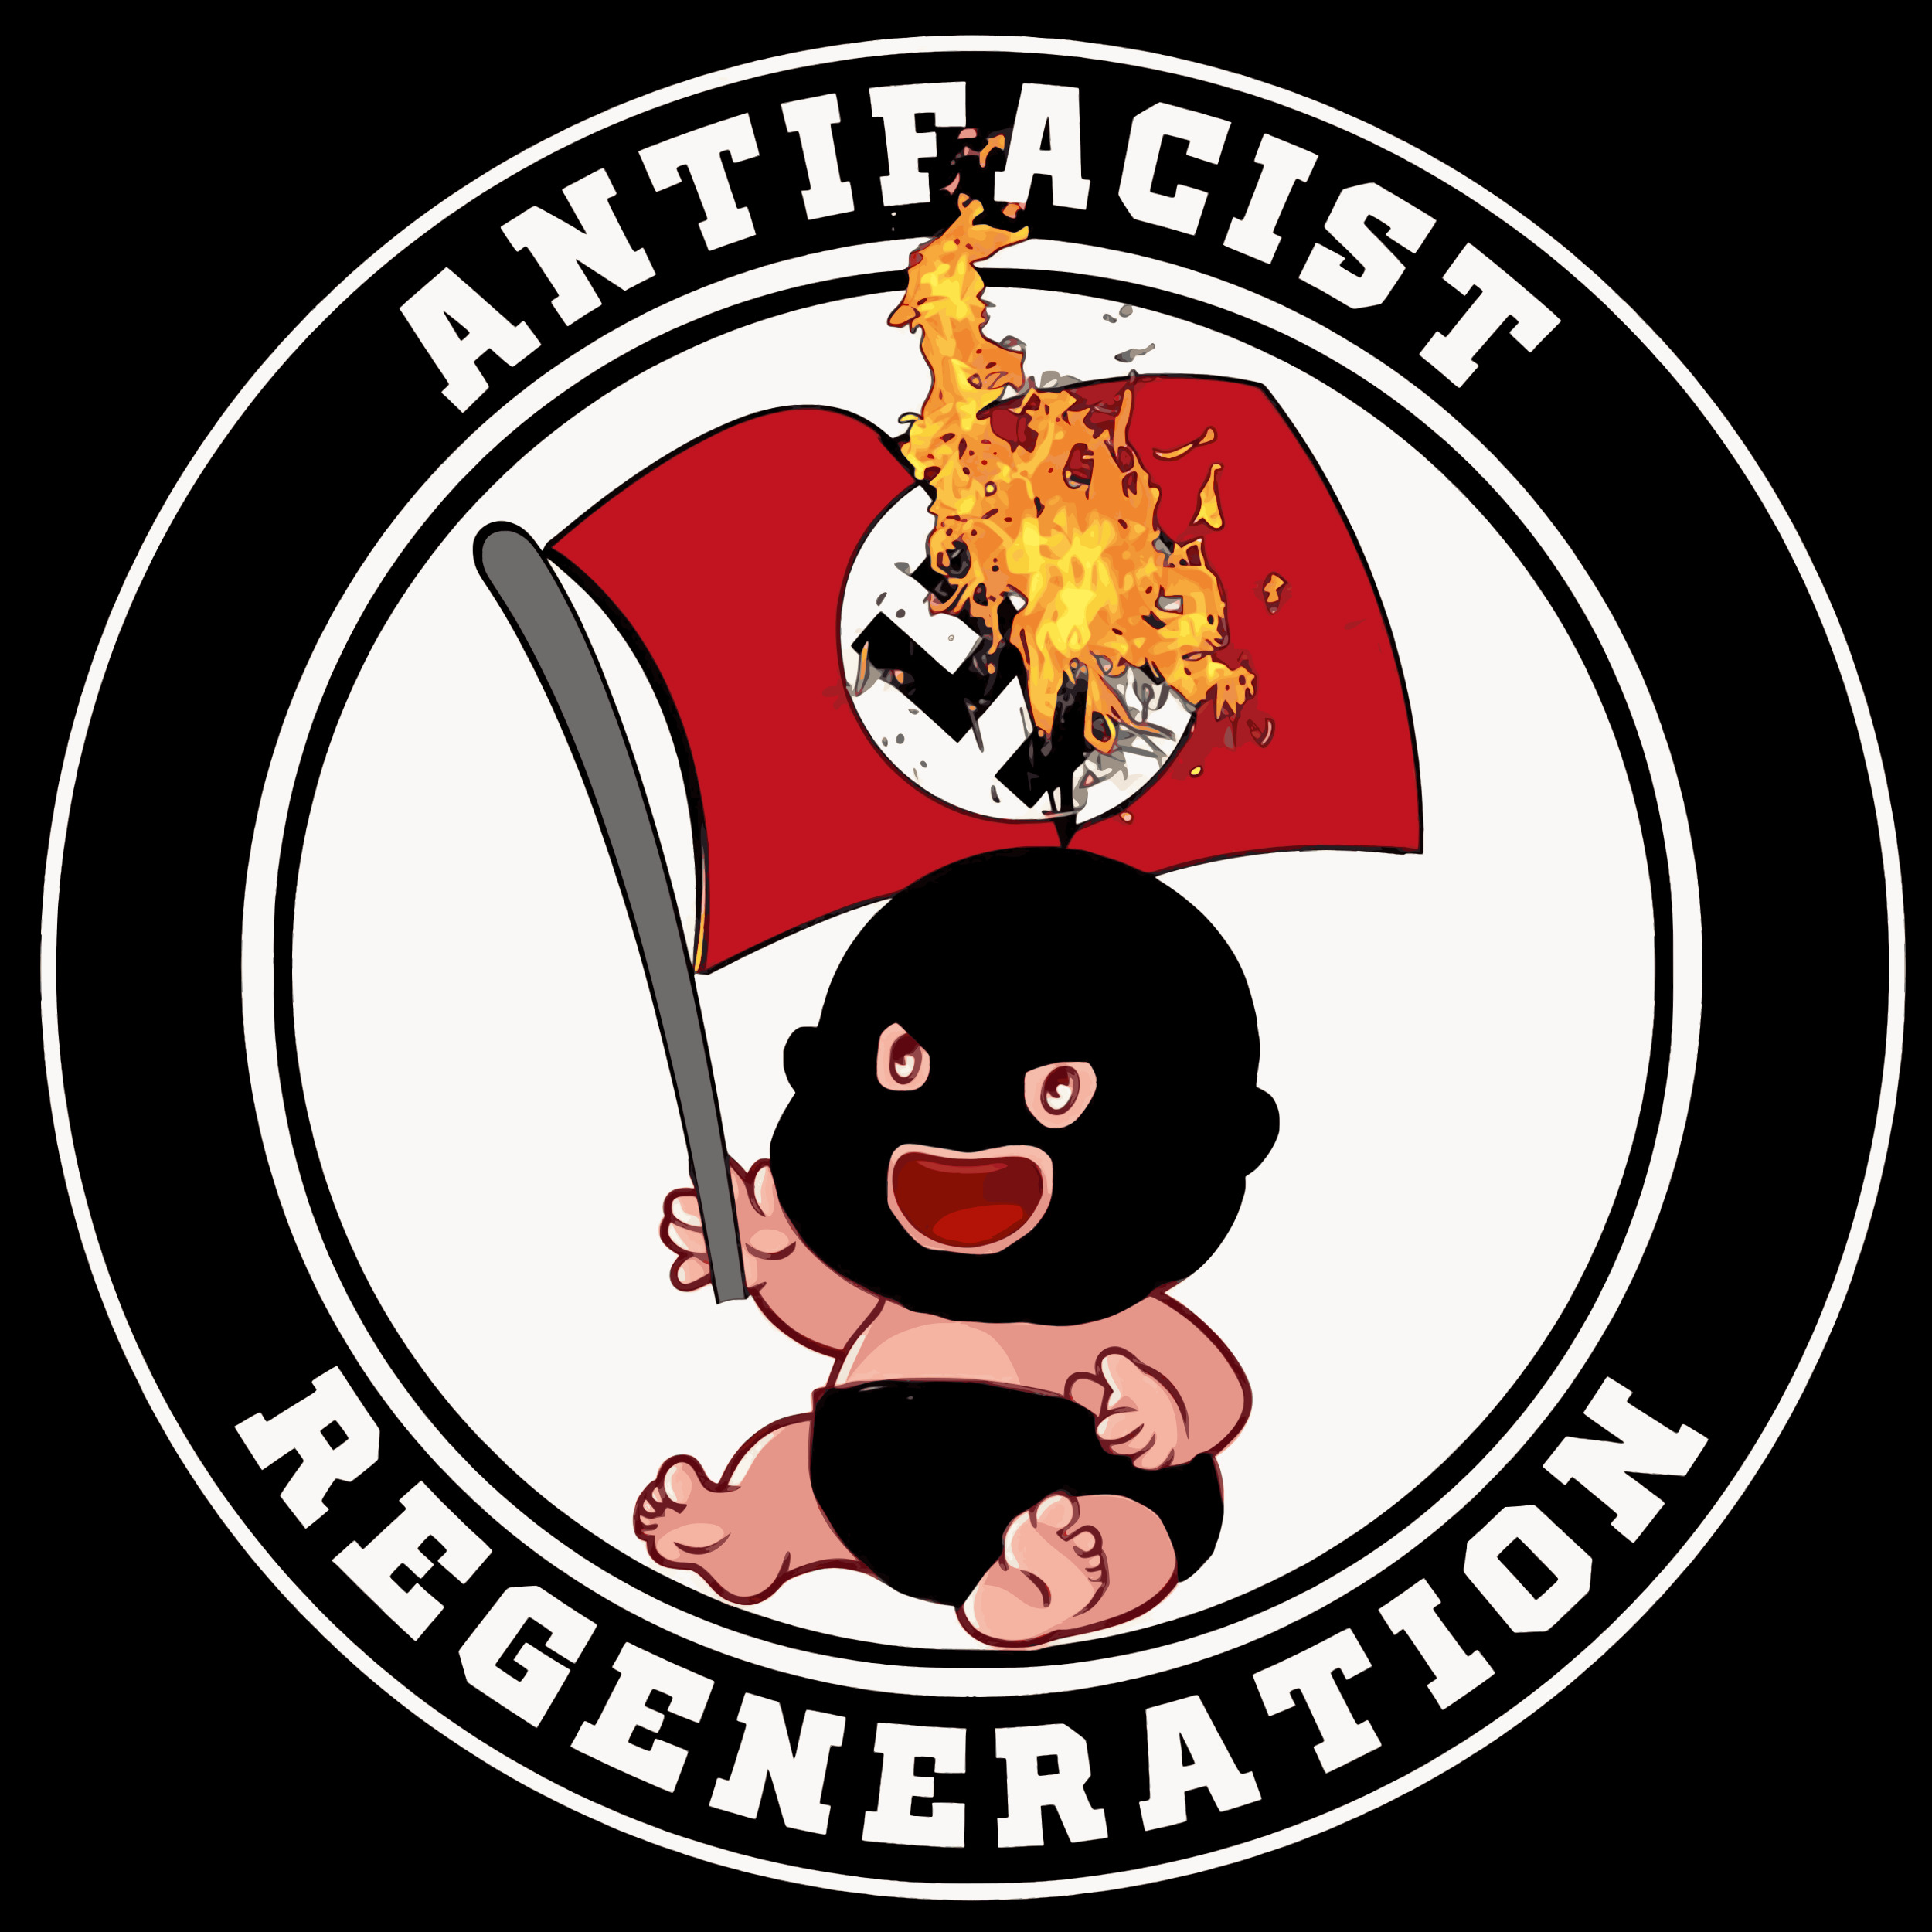 Antifascist regeneration